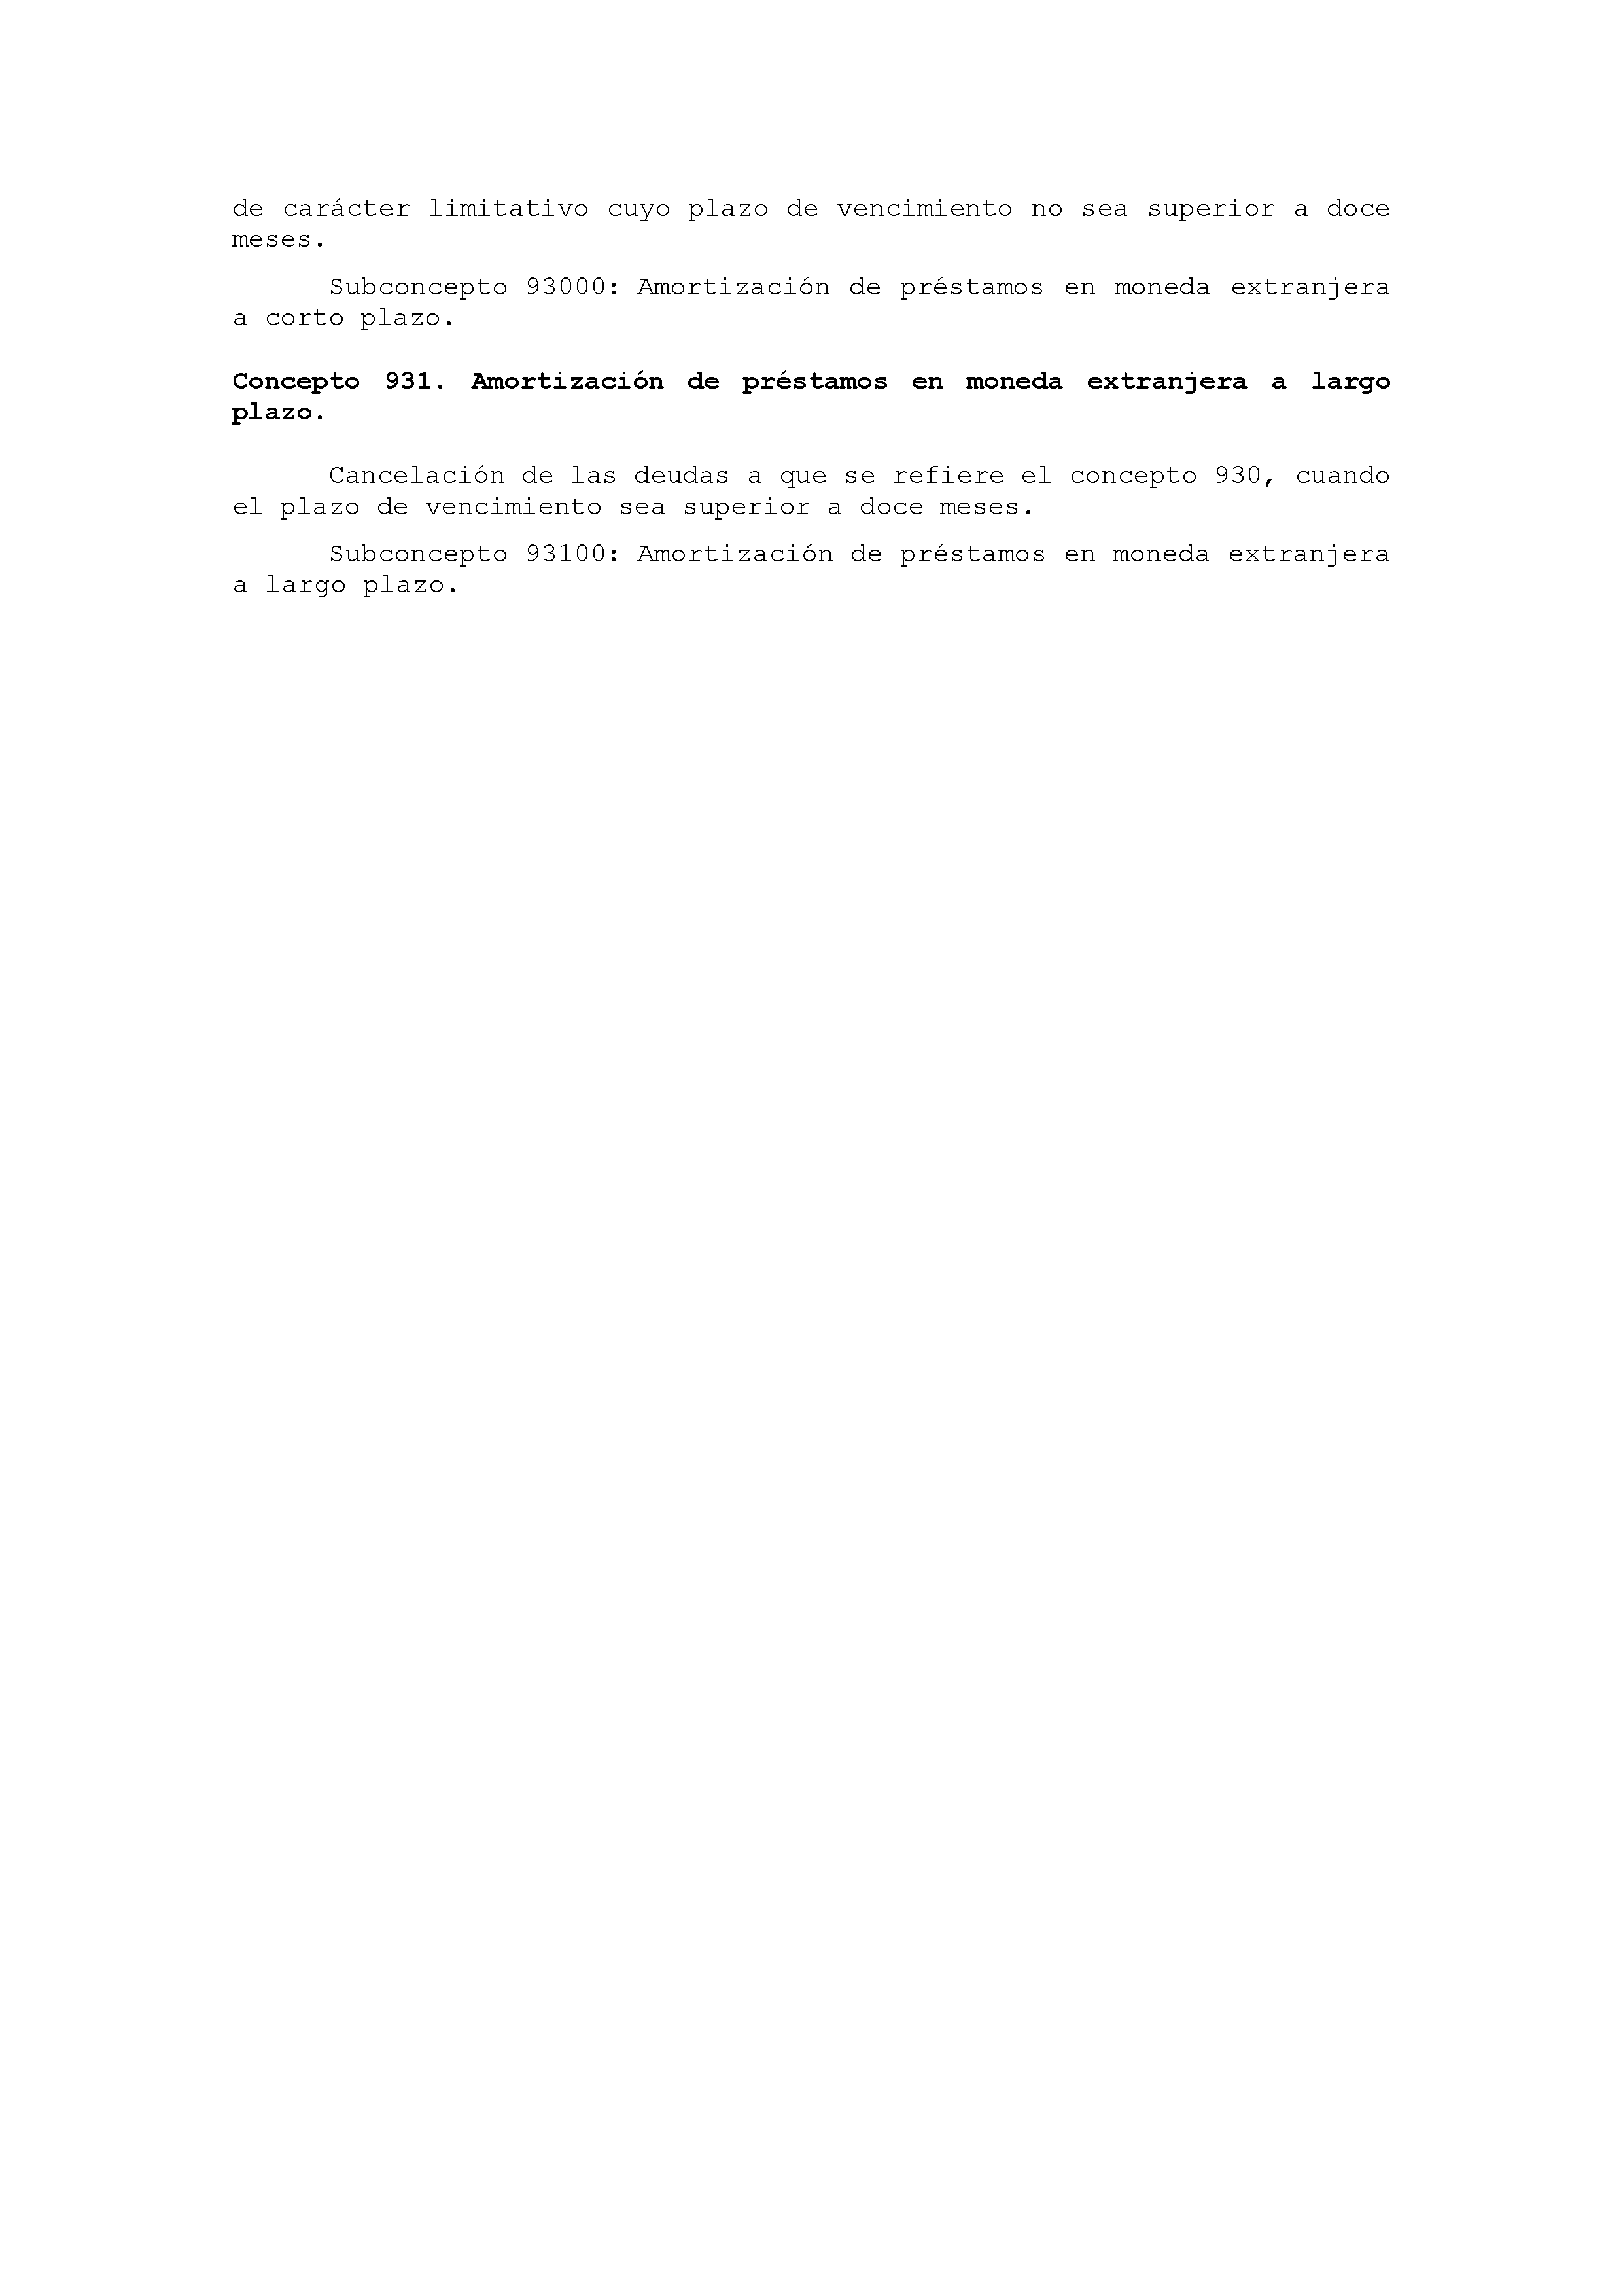 ANEXO IX CÓDIGO DE LA CLASIFICACIÓN ECONÓMICA DE LOS GASTOS PÚBLICOS Pag 48